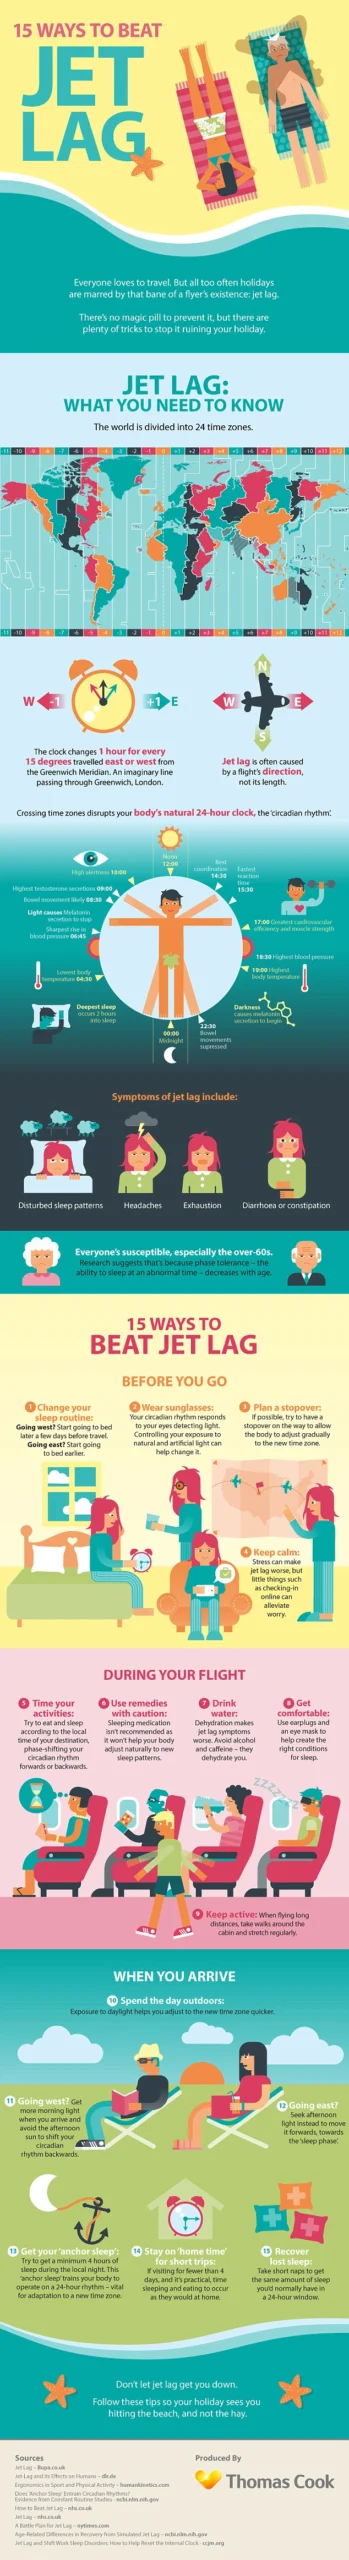 15 Ways To Beat Jetlag [InfoGraphic]
